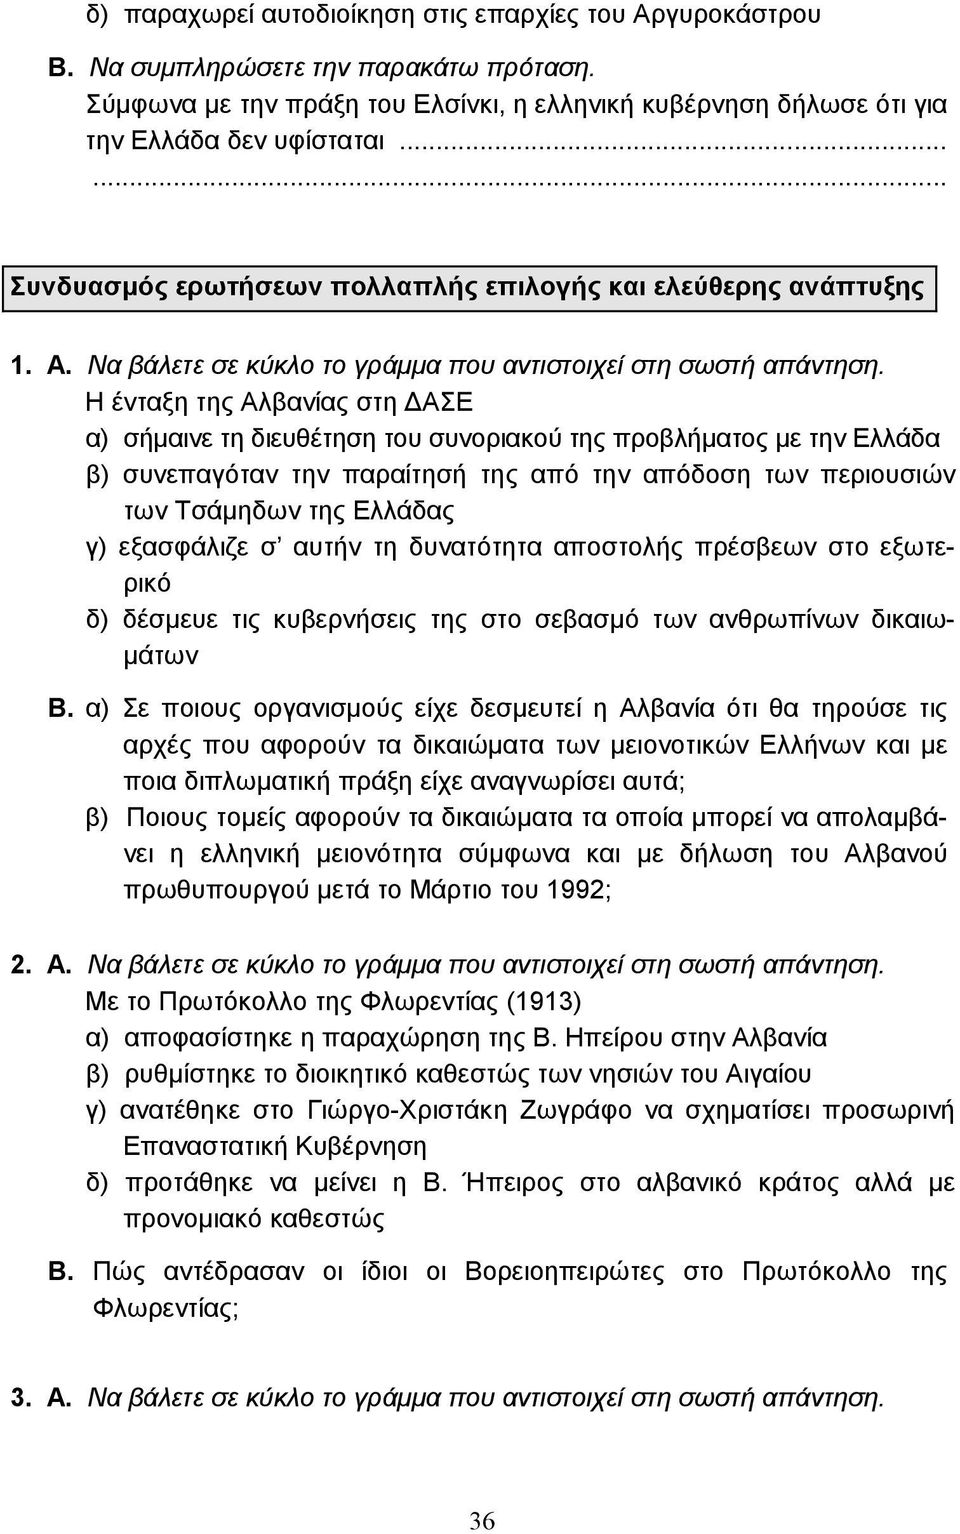 Η ένταξη της Αλβανίας στη ΑΣΕ α) σήµαινε τη διευθέτηση του συνοριακού της προβλήµατος µε την Ελλάδα β) συνεπαγόταν την παραίτησή της από την απόδοση των περιουσιών των Τσάµηδων της Ελλάδας γ)